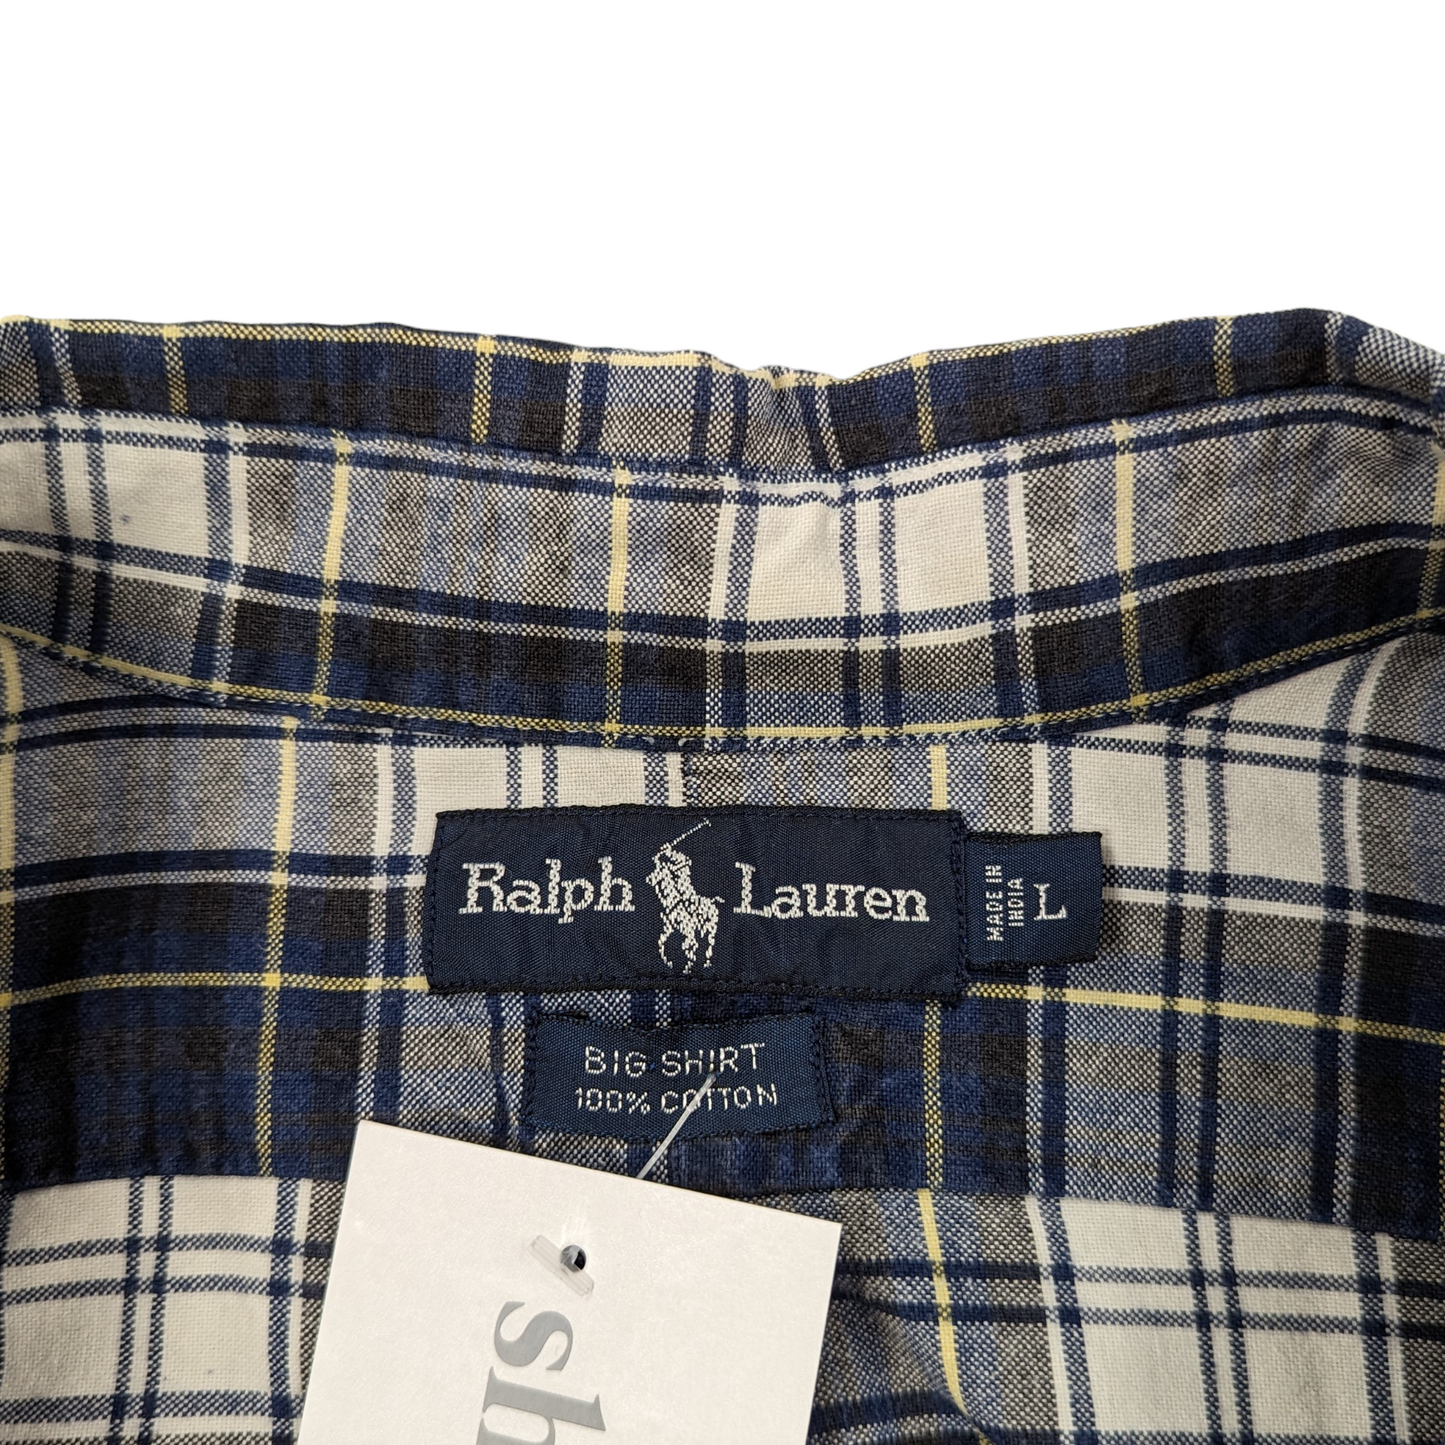 Ralph Lauren Check Shirt Size L